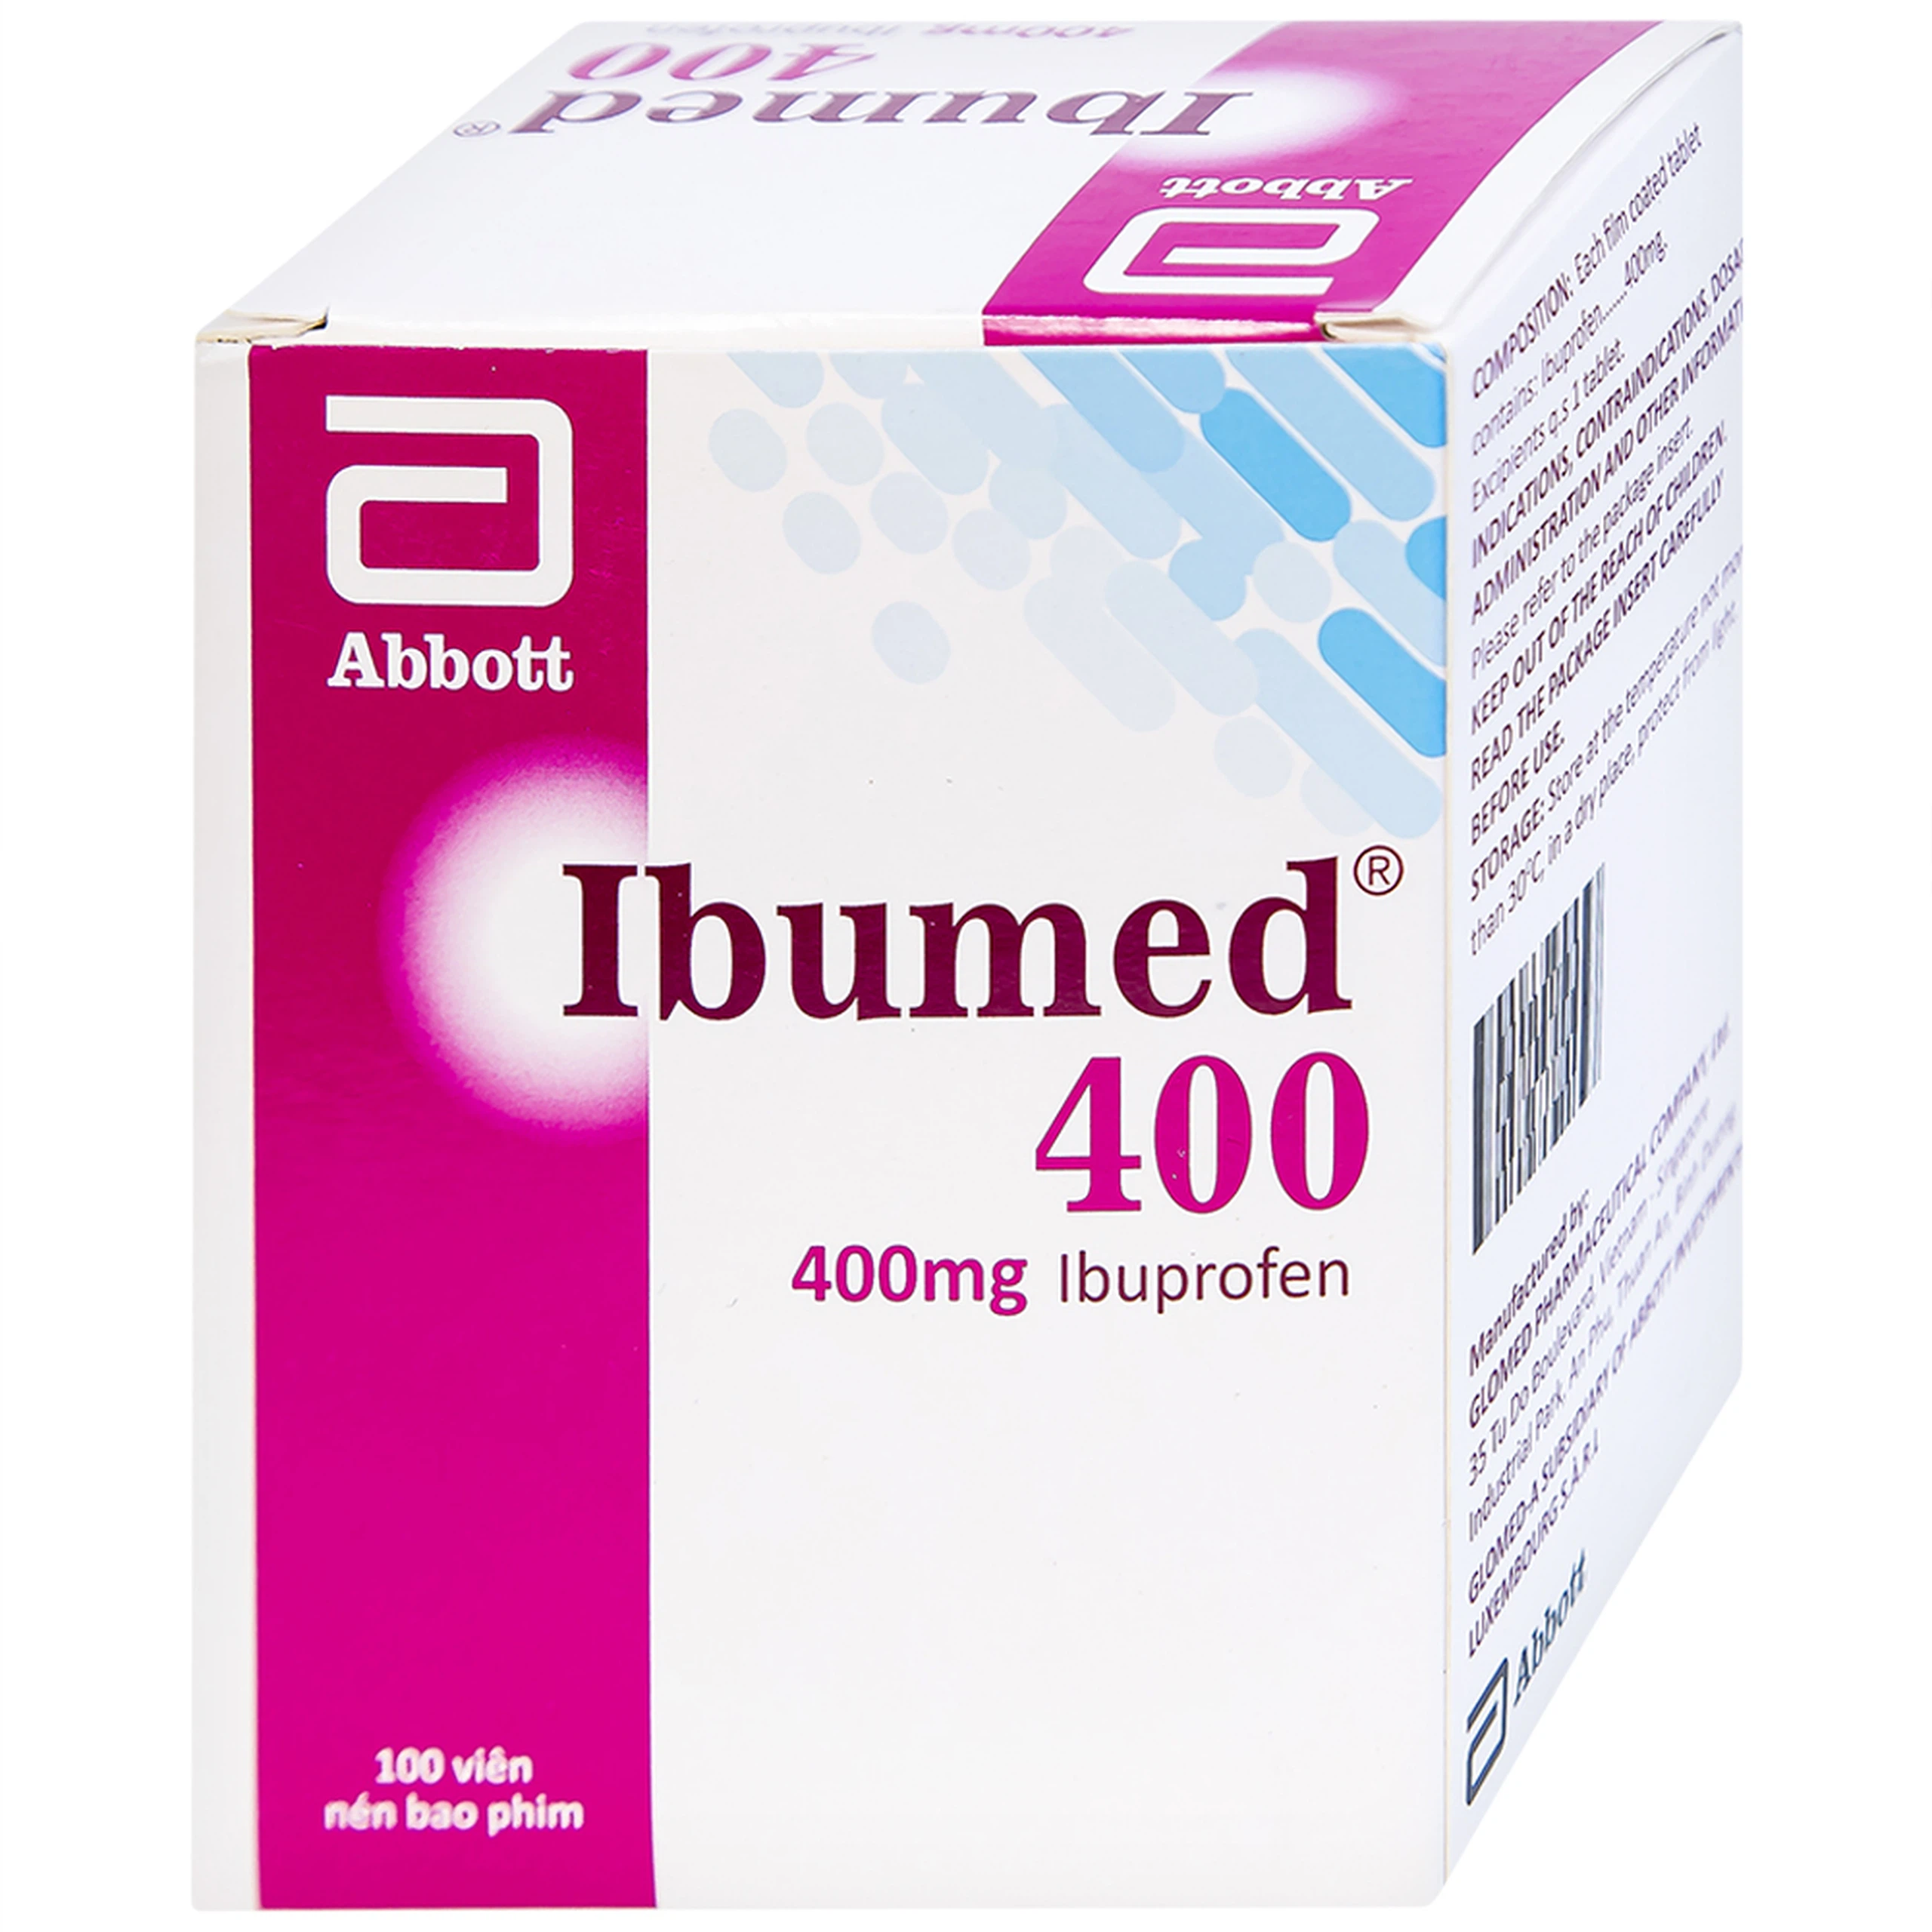 Thuốc Ibumed 400 Glomed giảm đau do cảm cúm, cảm lạnh, viêm khớp dạng thấp (10 vỉ x 10 viên)